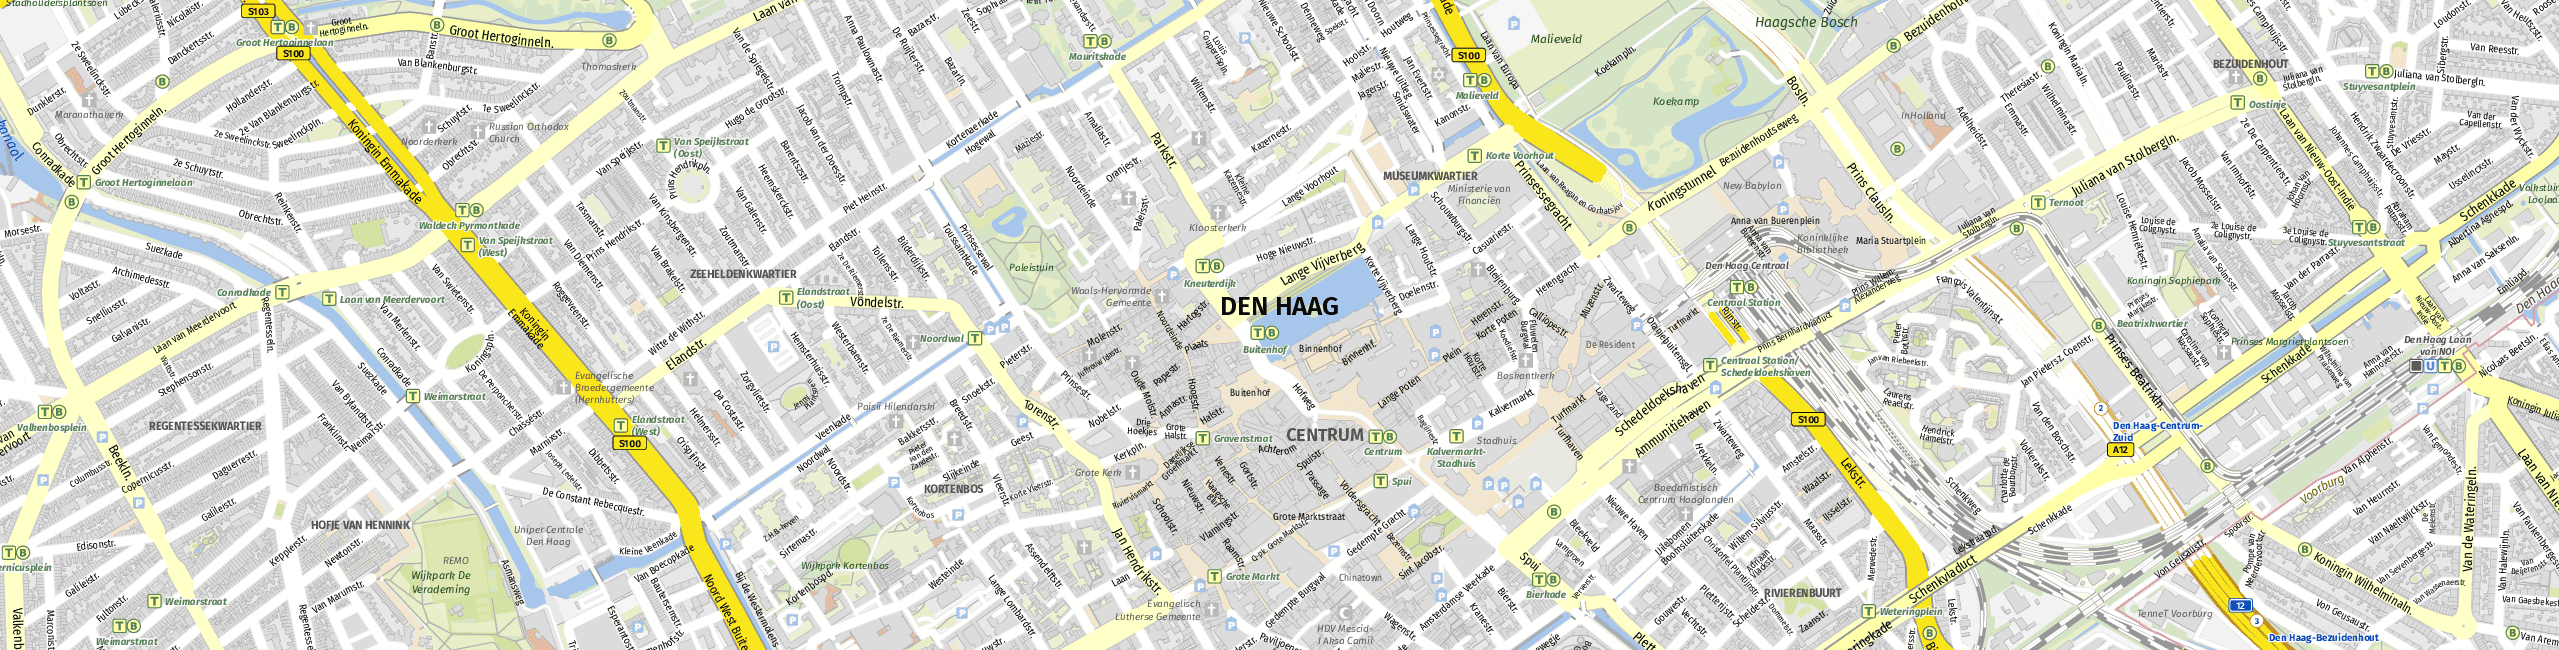 Stadtplan The Hague zum Downloaden.